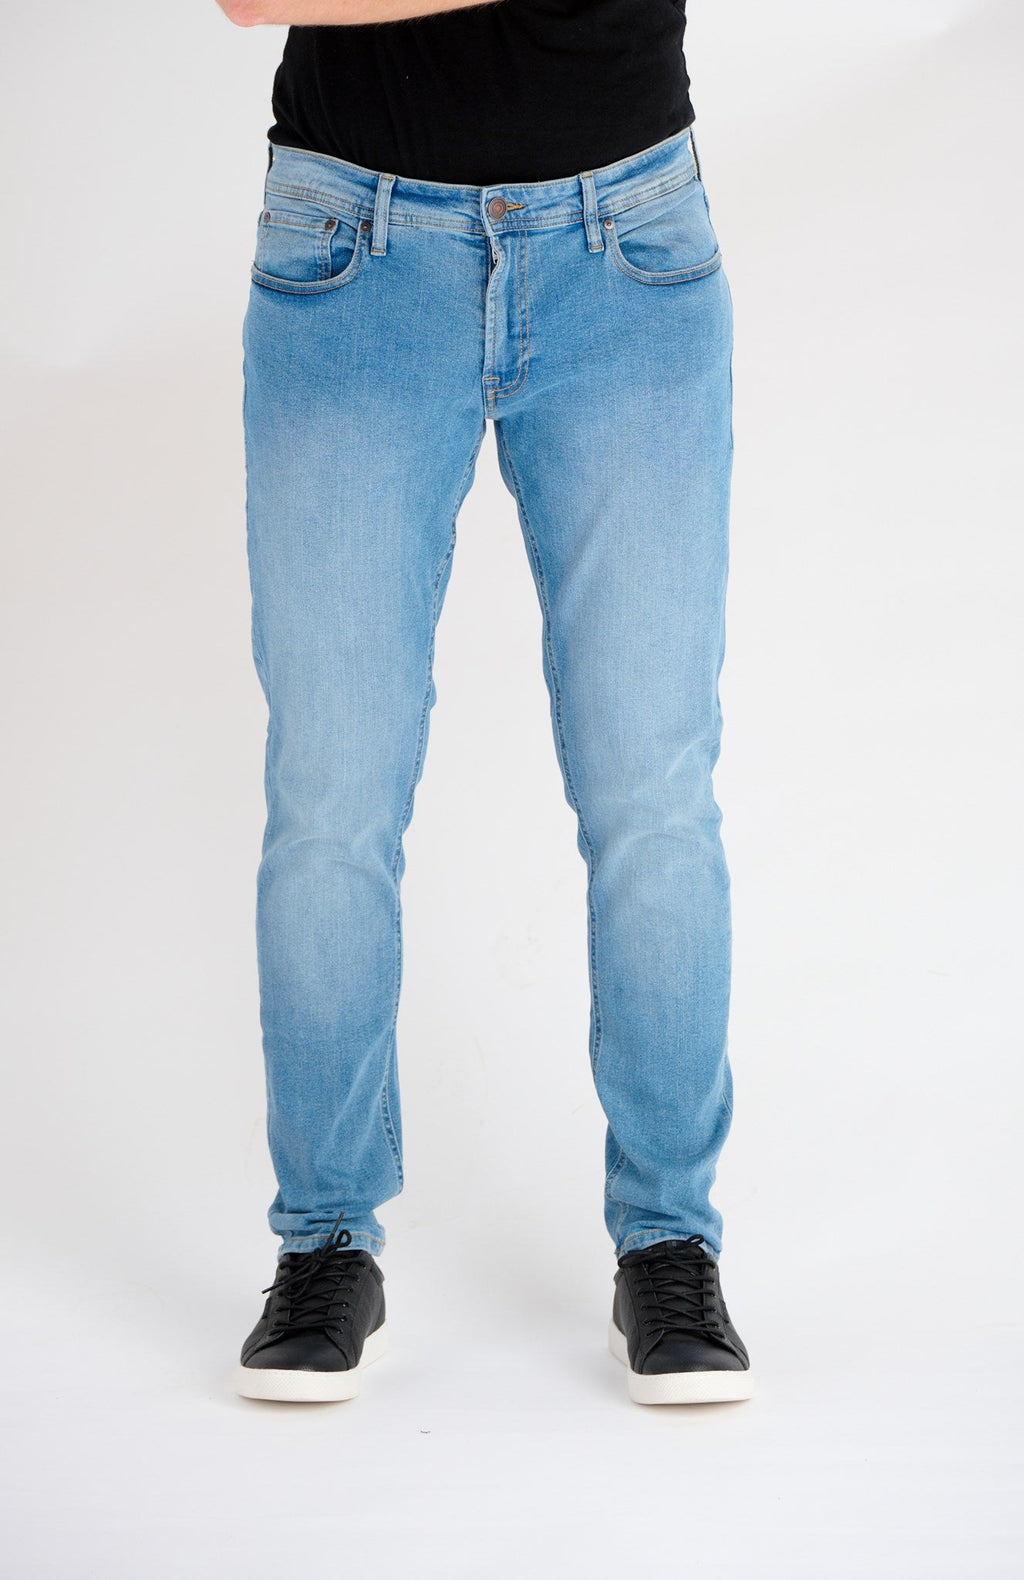 Los jeans de rendimiento originales - paquete de paquete (4 pcs).